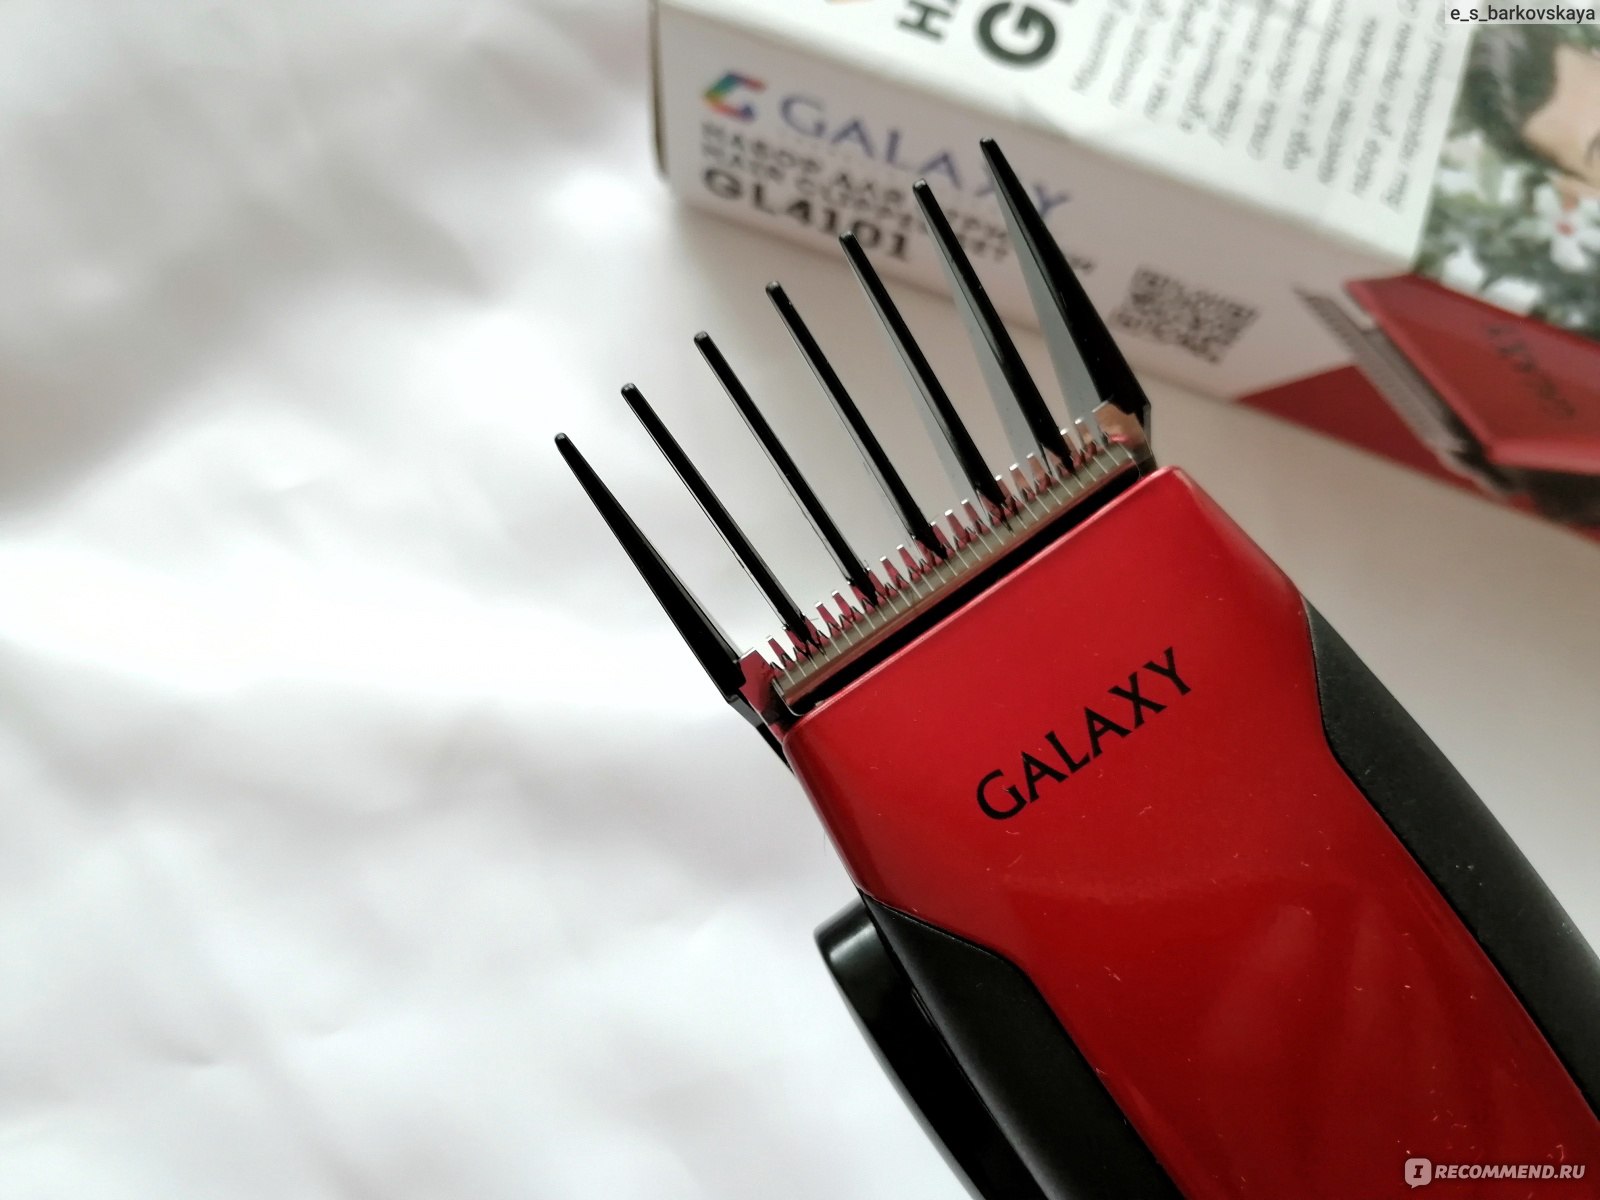 Машинка для стрижки волос galaxy gl 4153